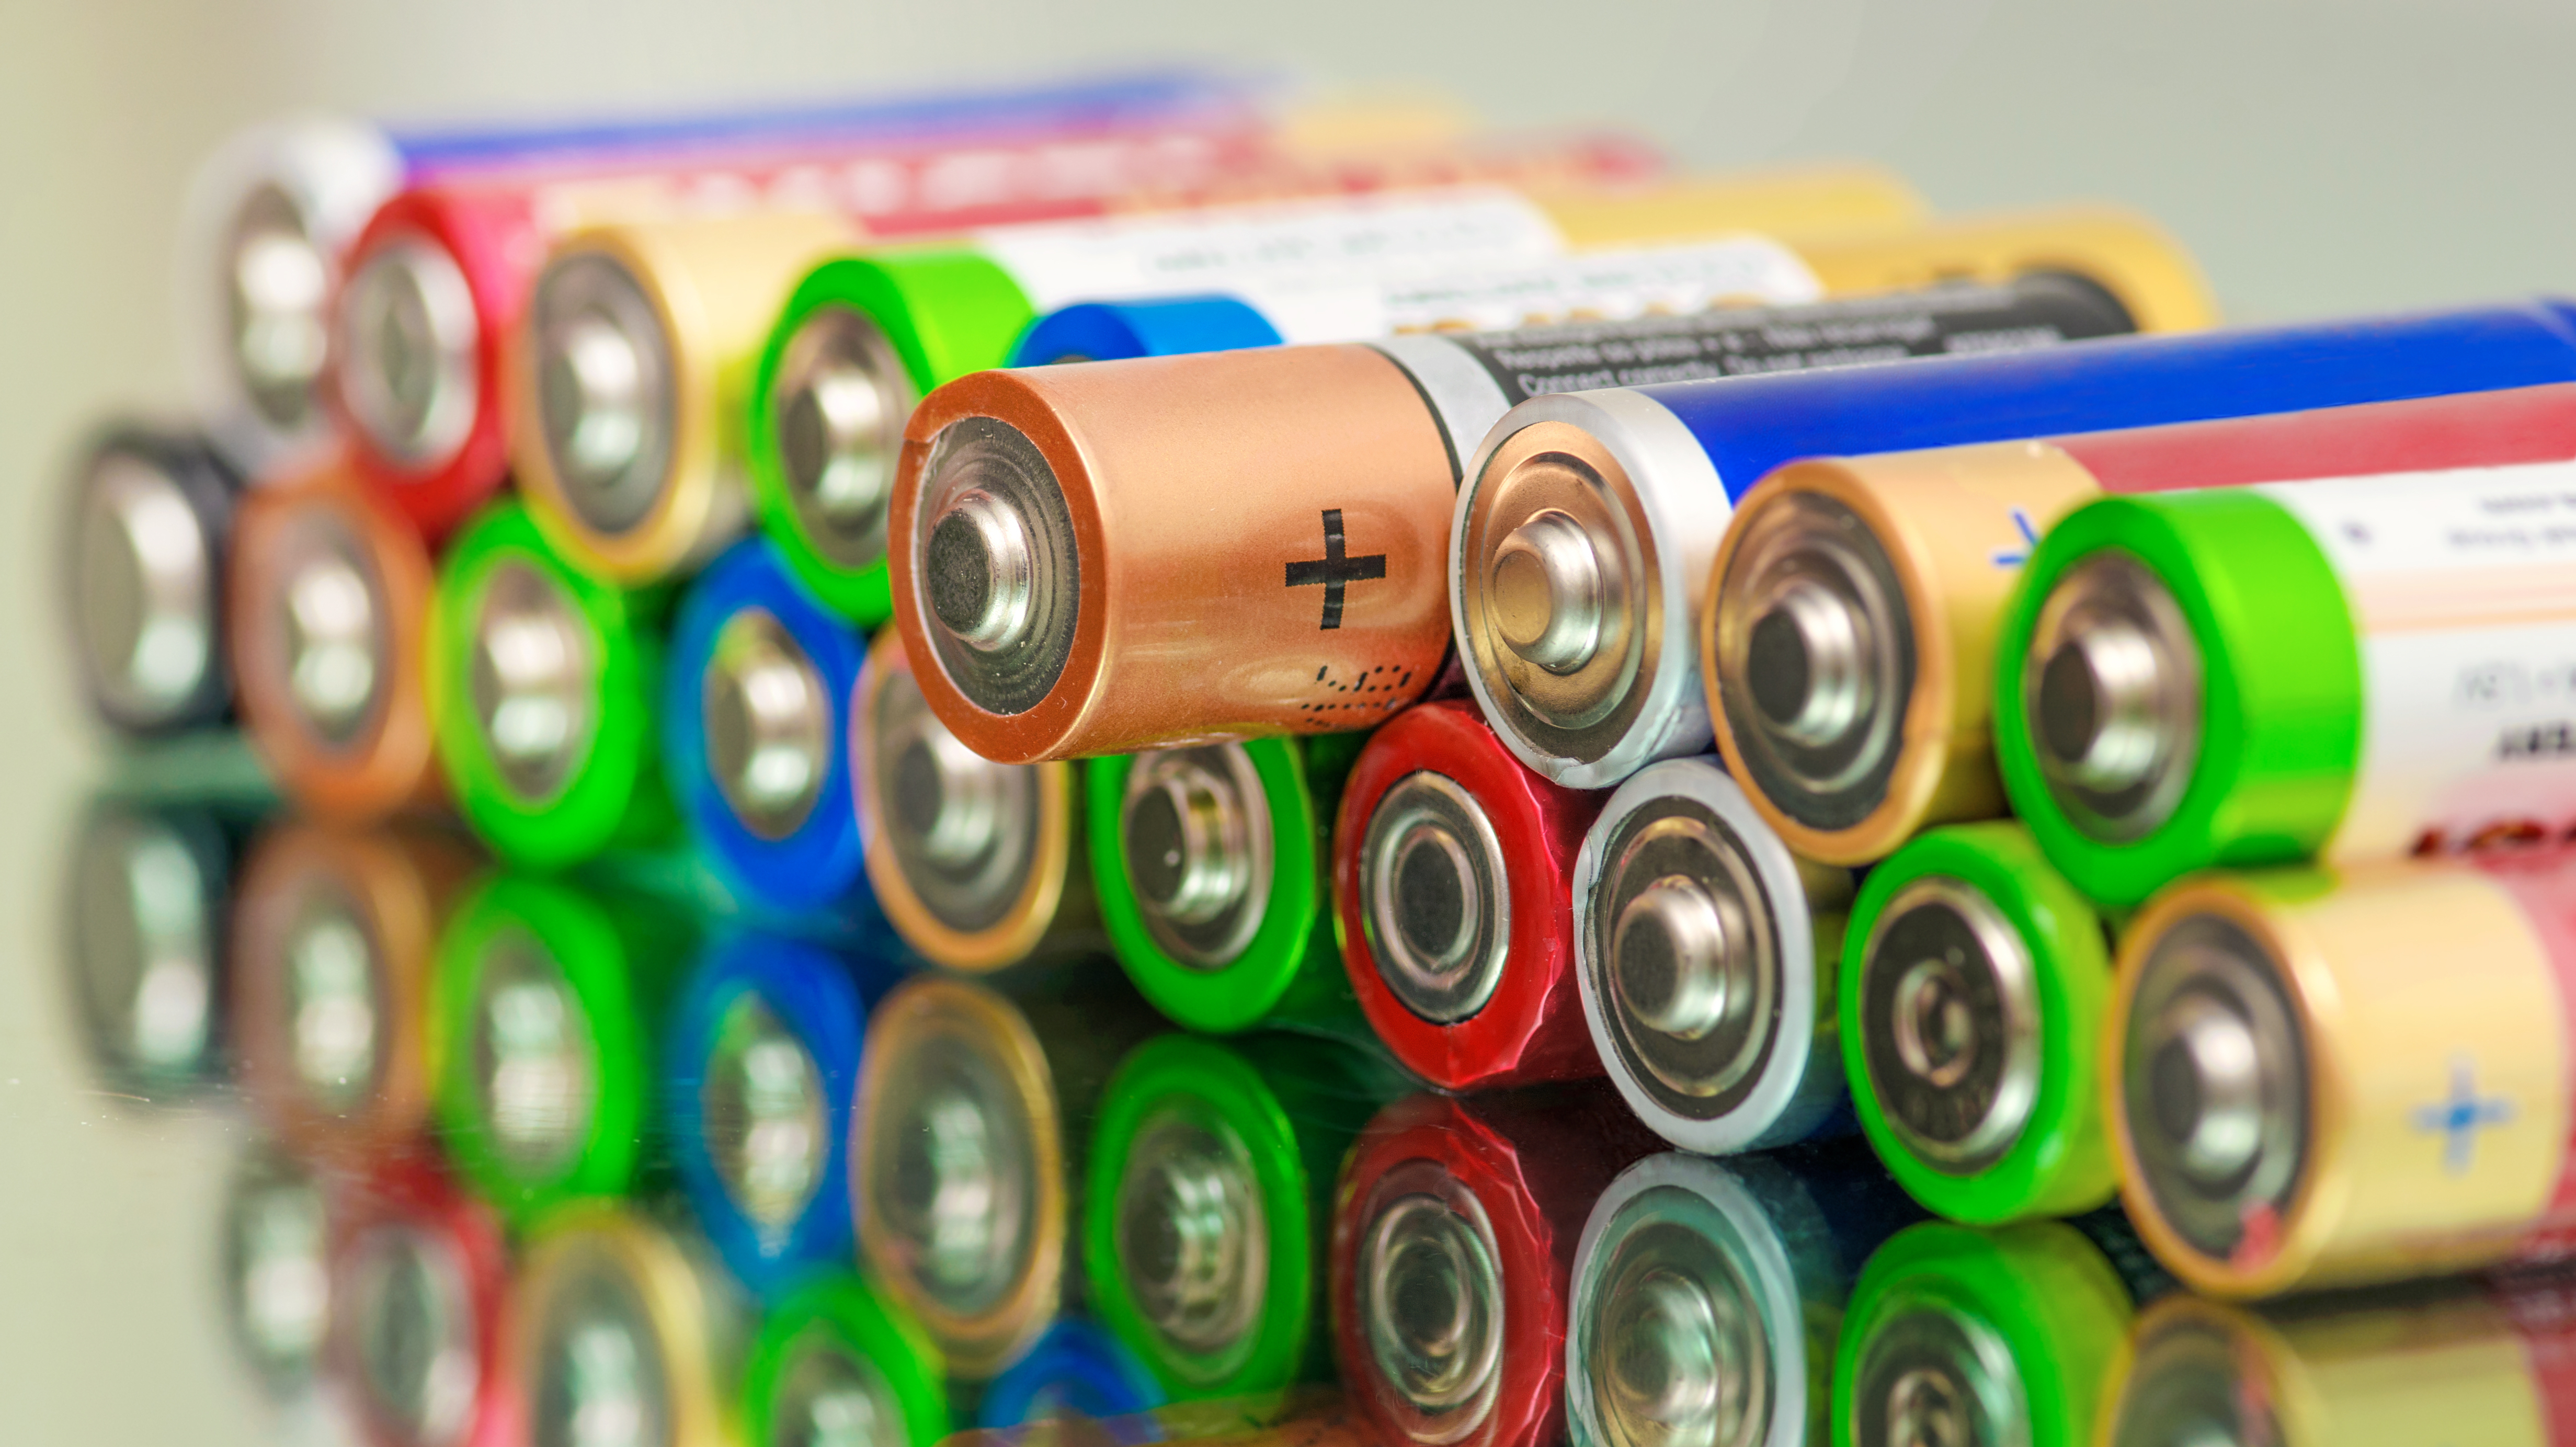 Batterie ausgelaufen - was tun? | heise online